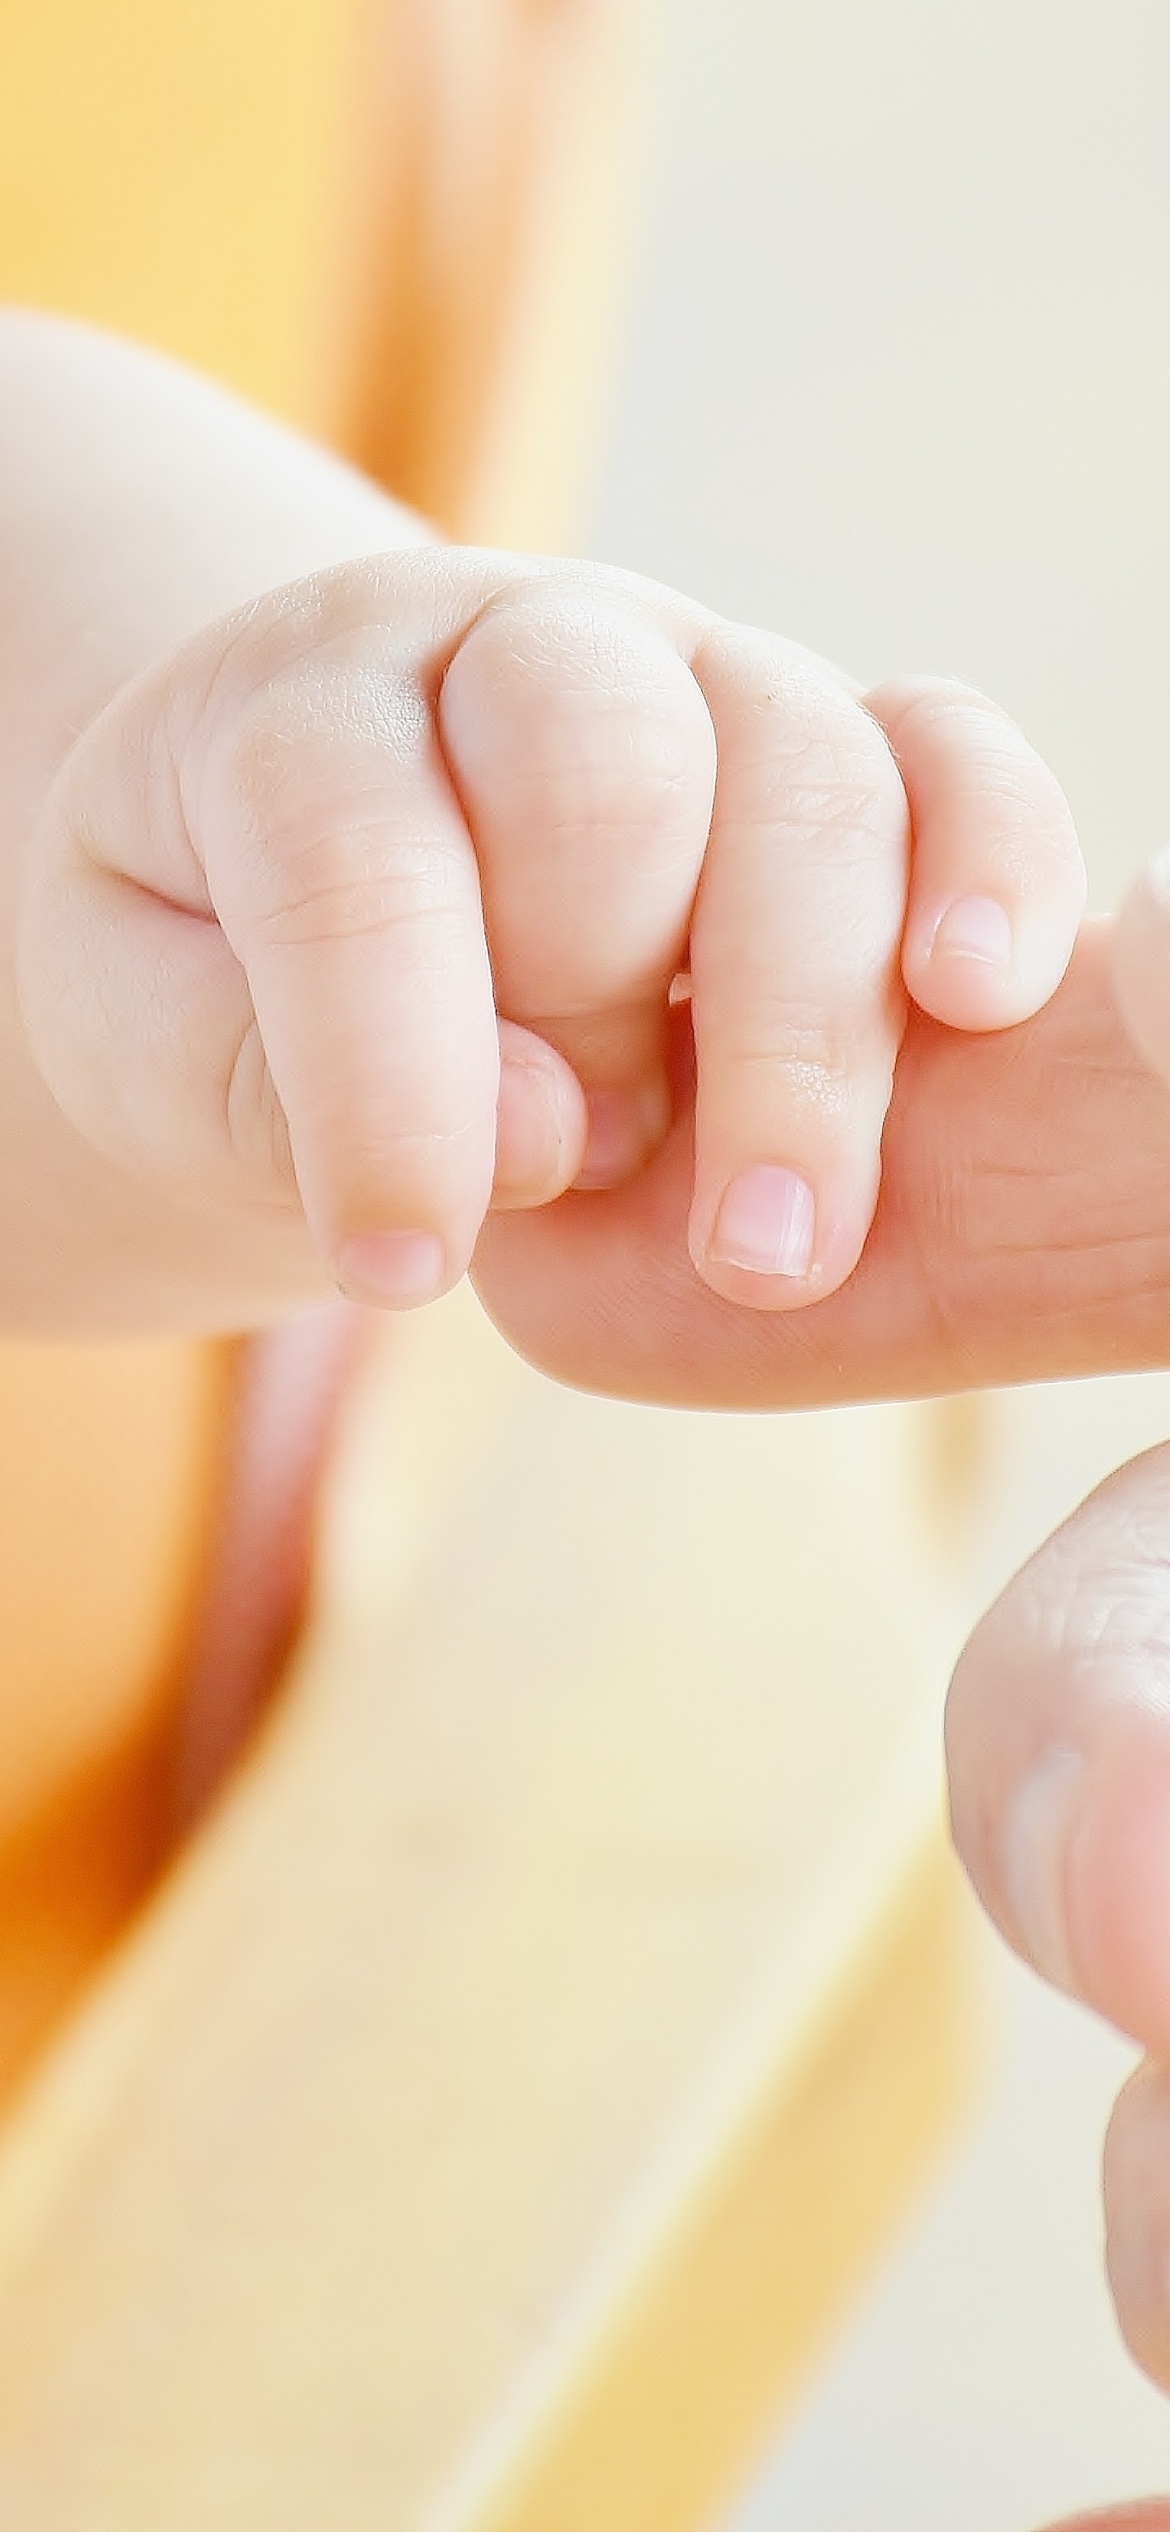 Baby hands Wallpaper 4K, Infant, Love, Holding hands, Hands together